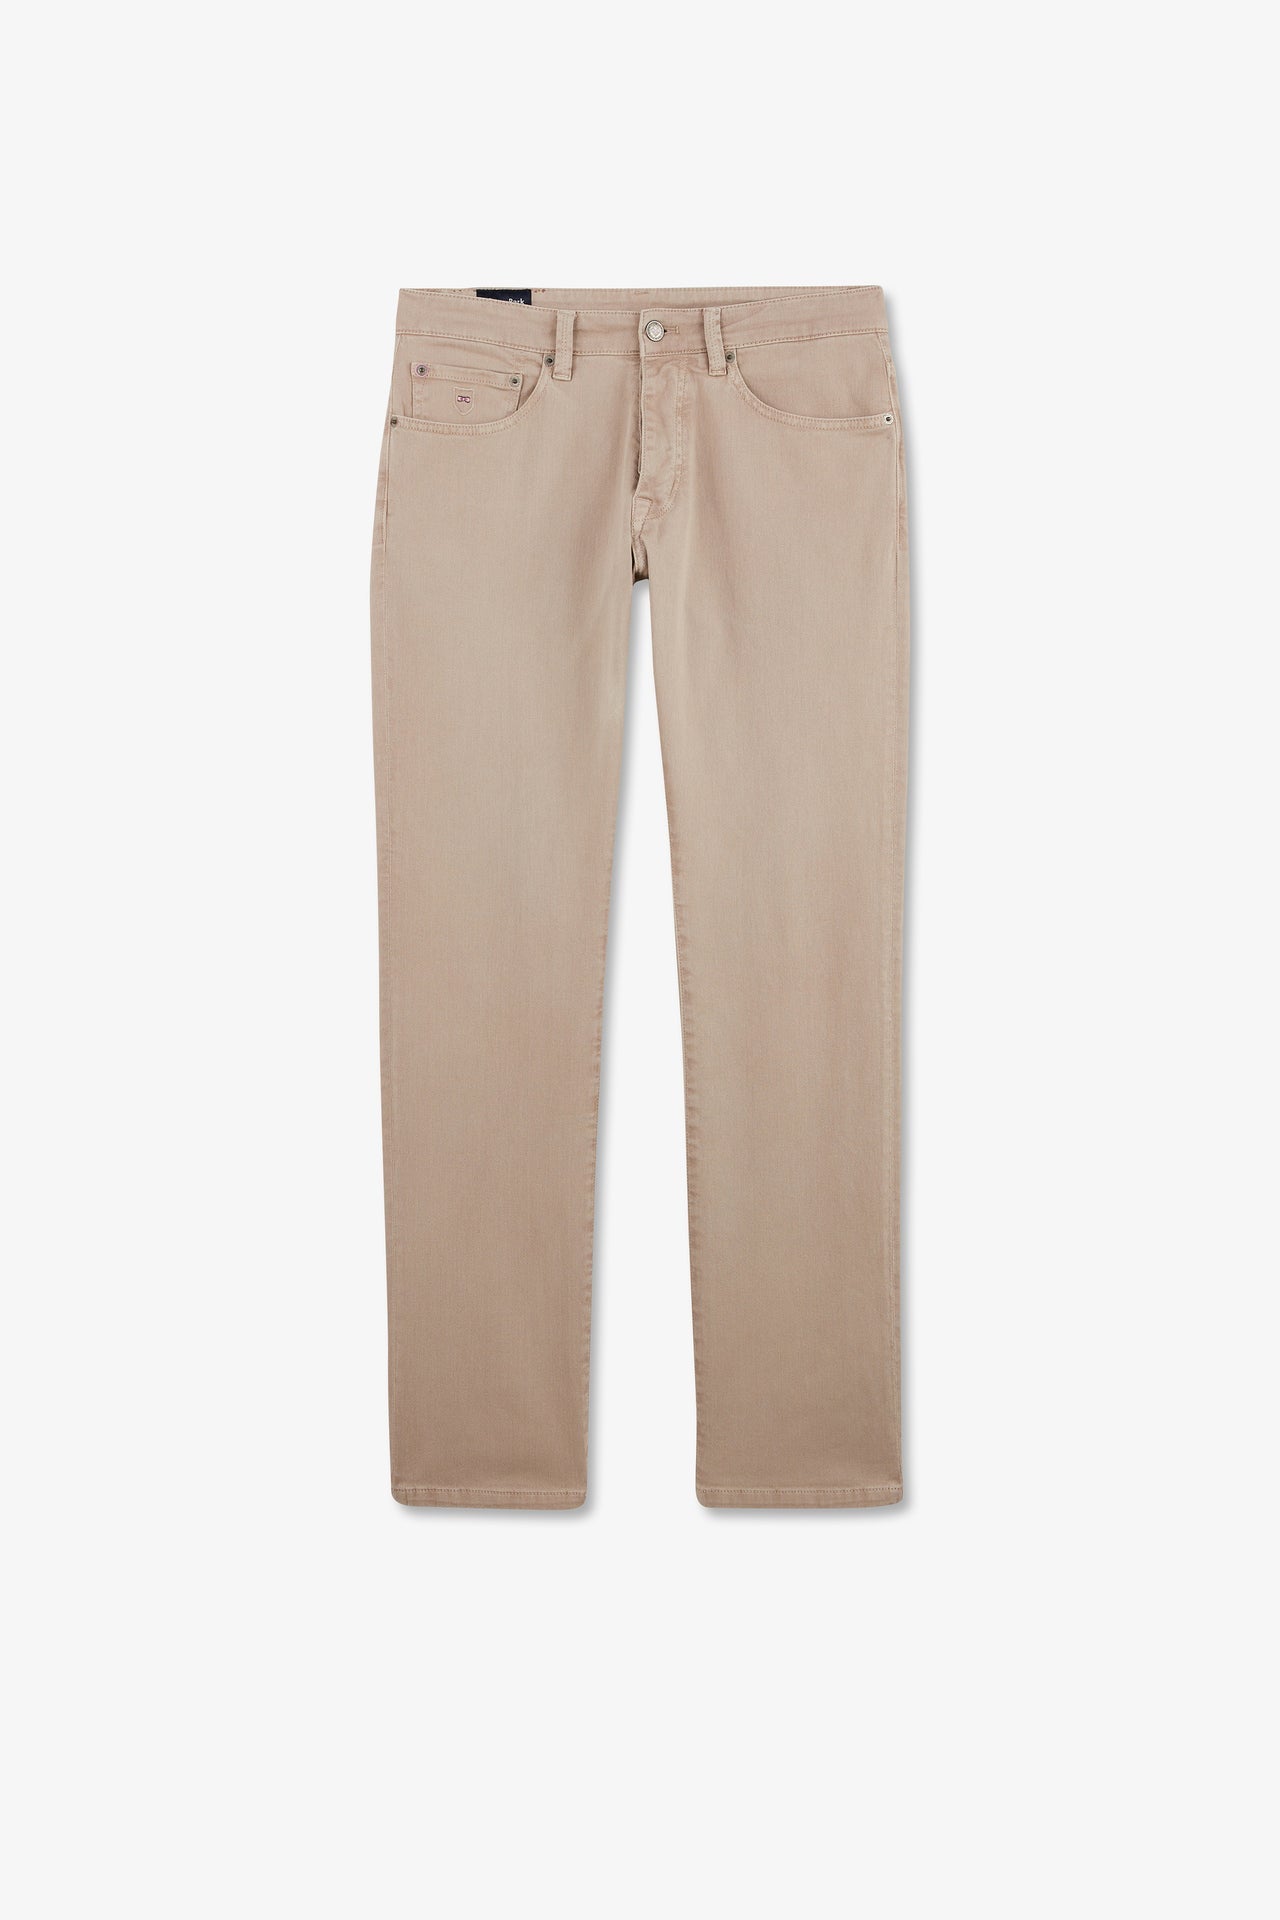 Pantalon droit beige - Image 2